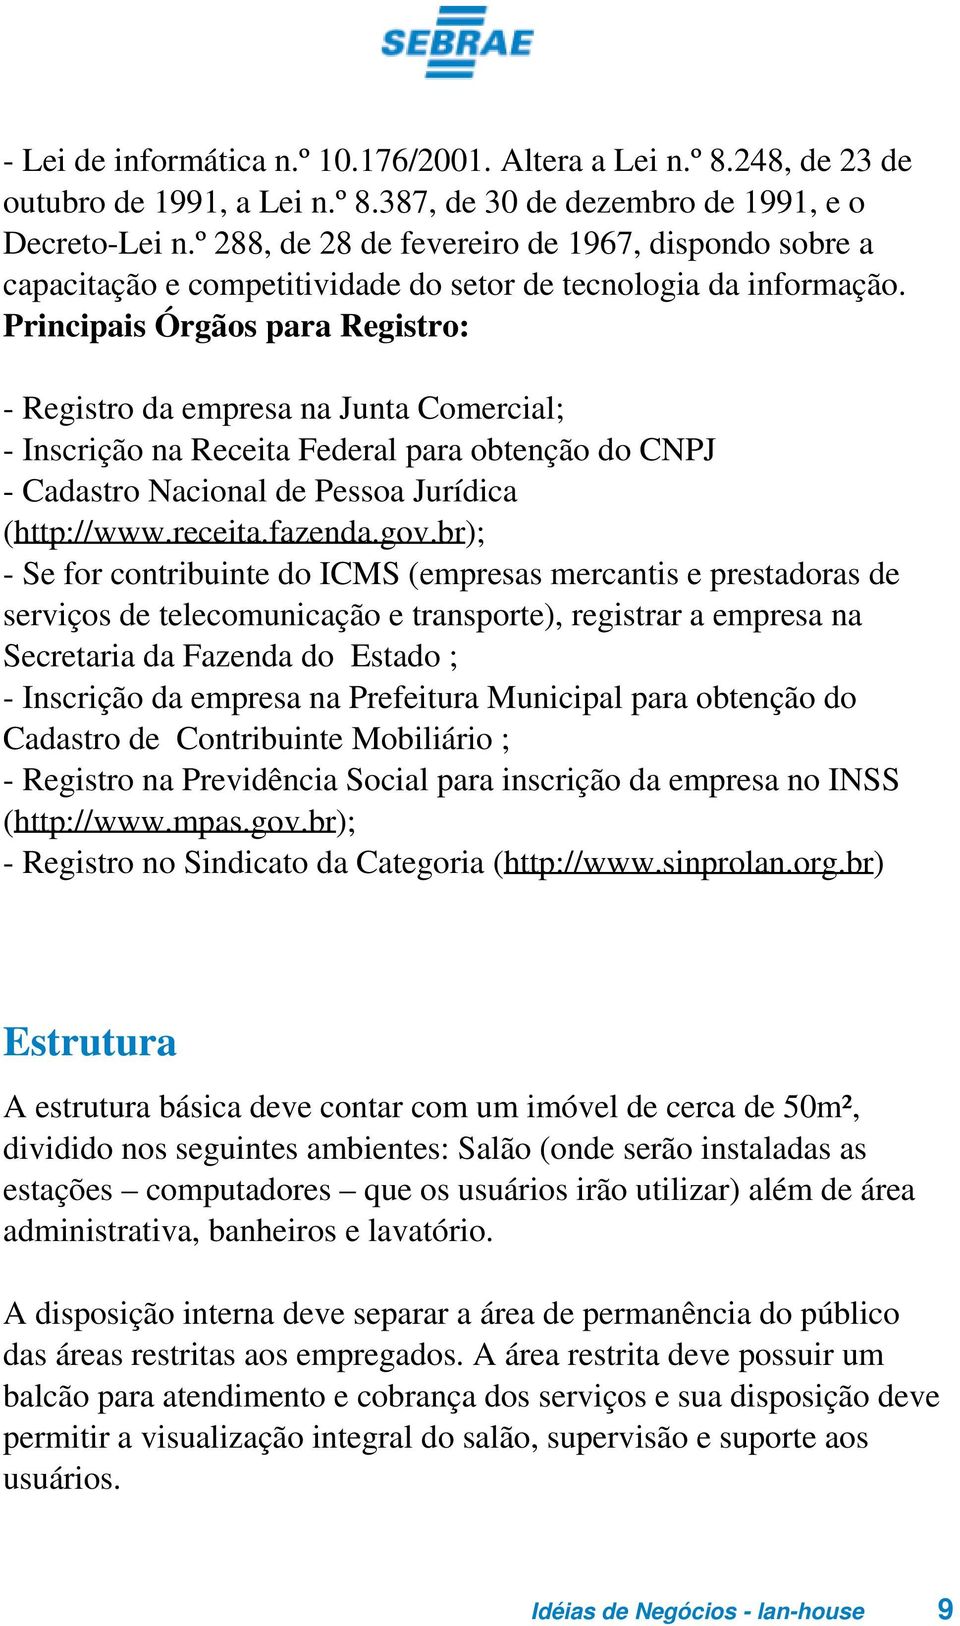 Principais Órgãos para Registro: - Registro da empresa na Junta Comercial; - Inscrição na Receita Federal para obtenção do CNPJ - Cadastro Nacional de Pessoa Jurídica (http://www.receita.fazenda.gov.